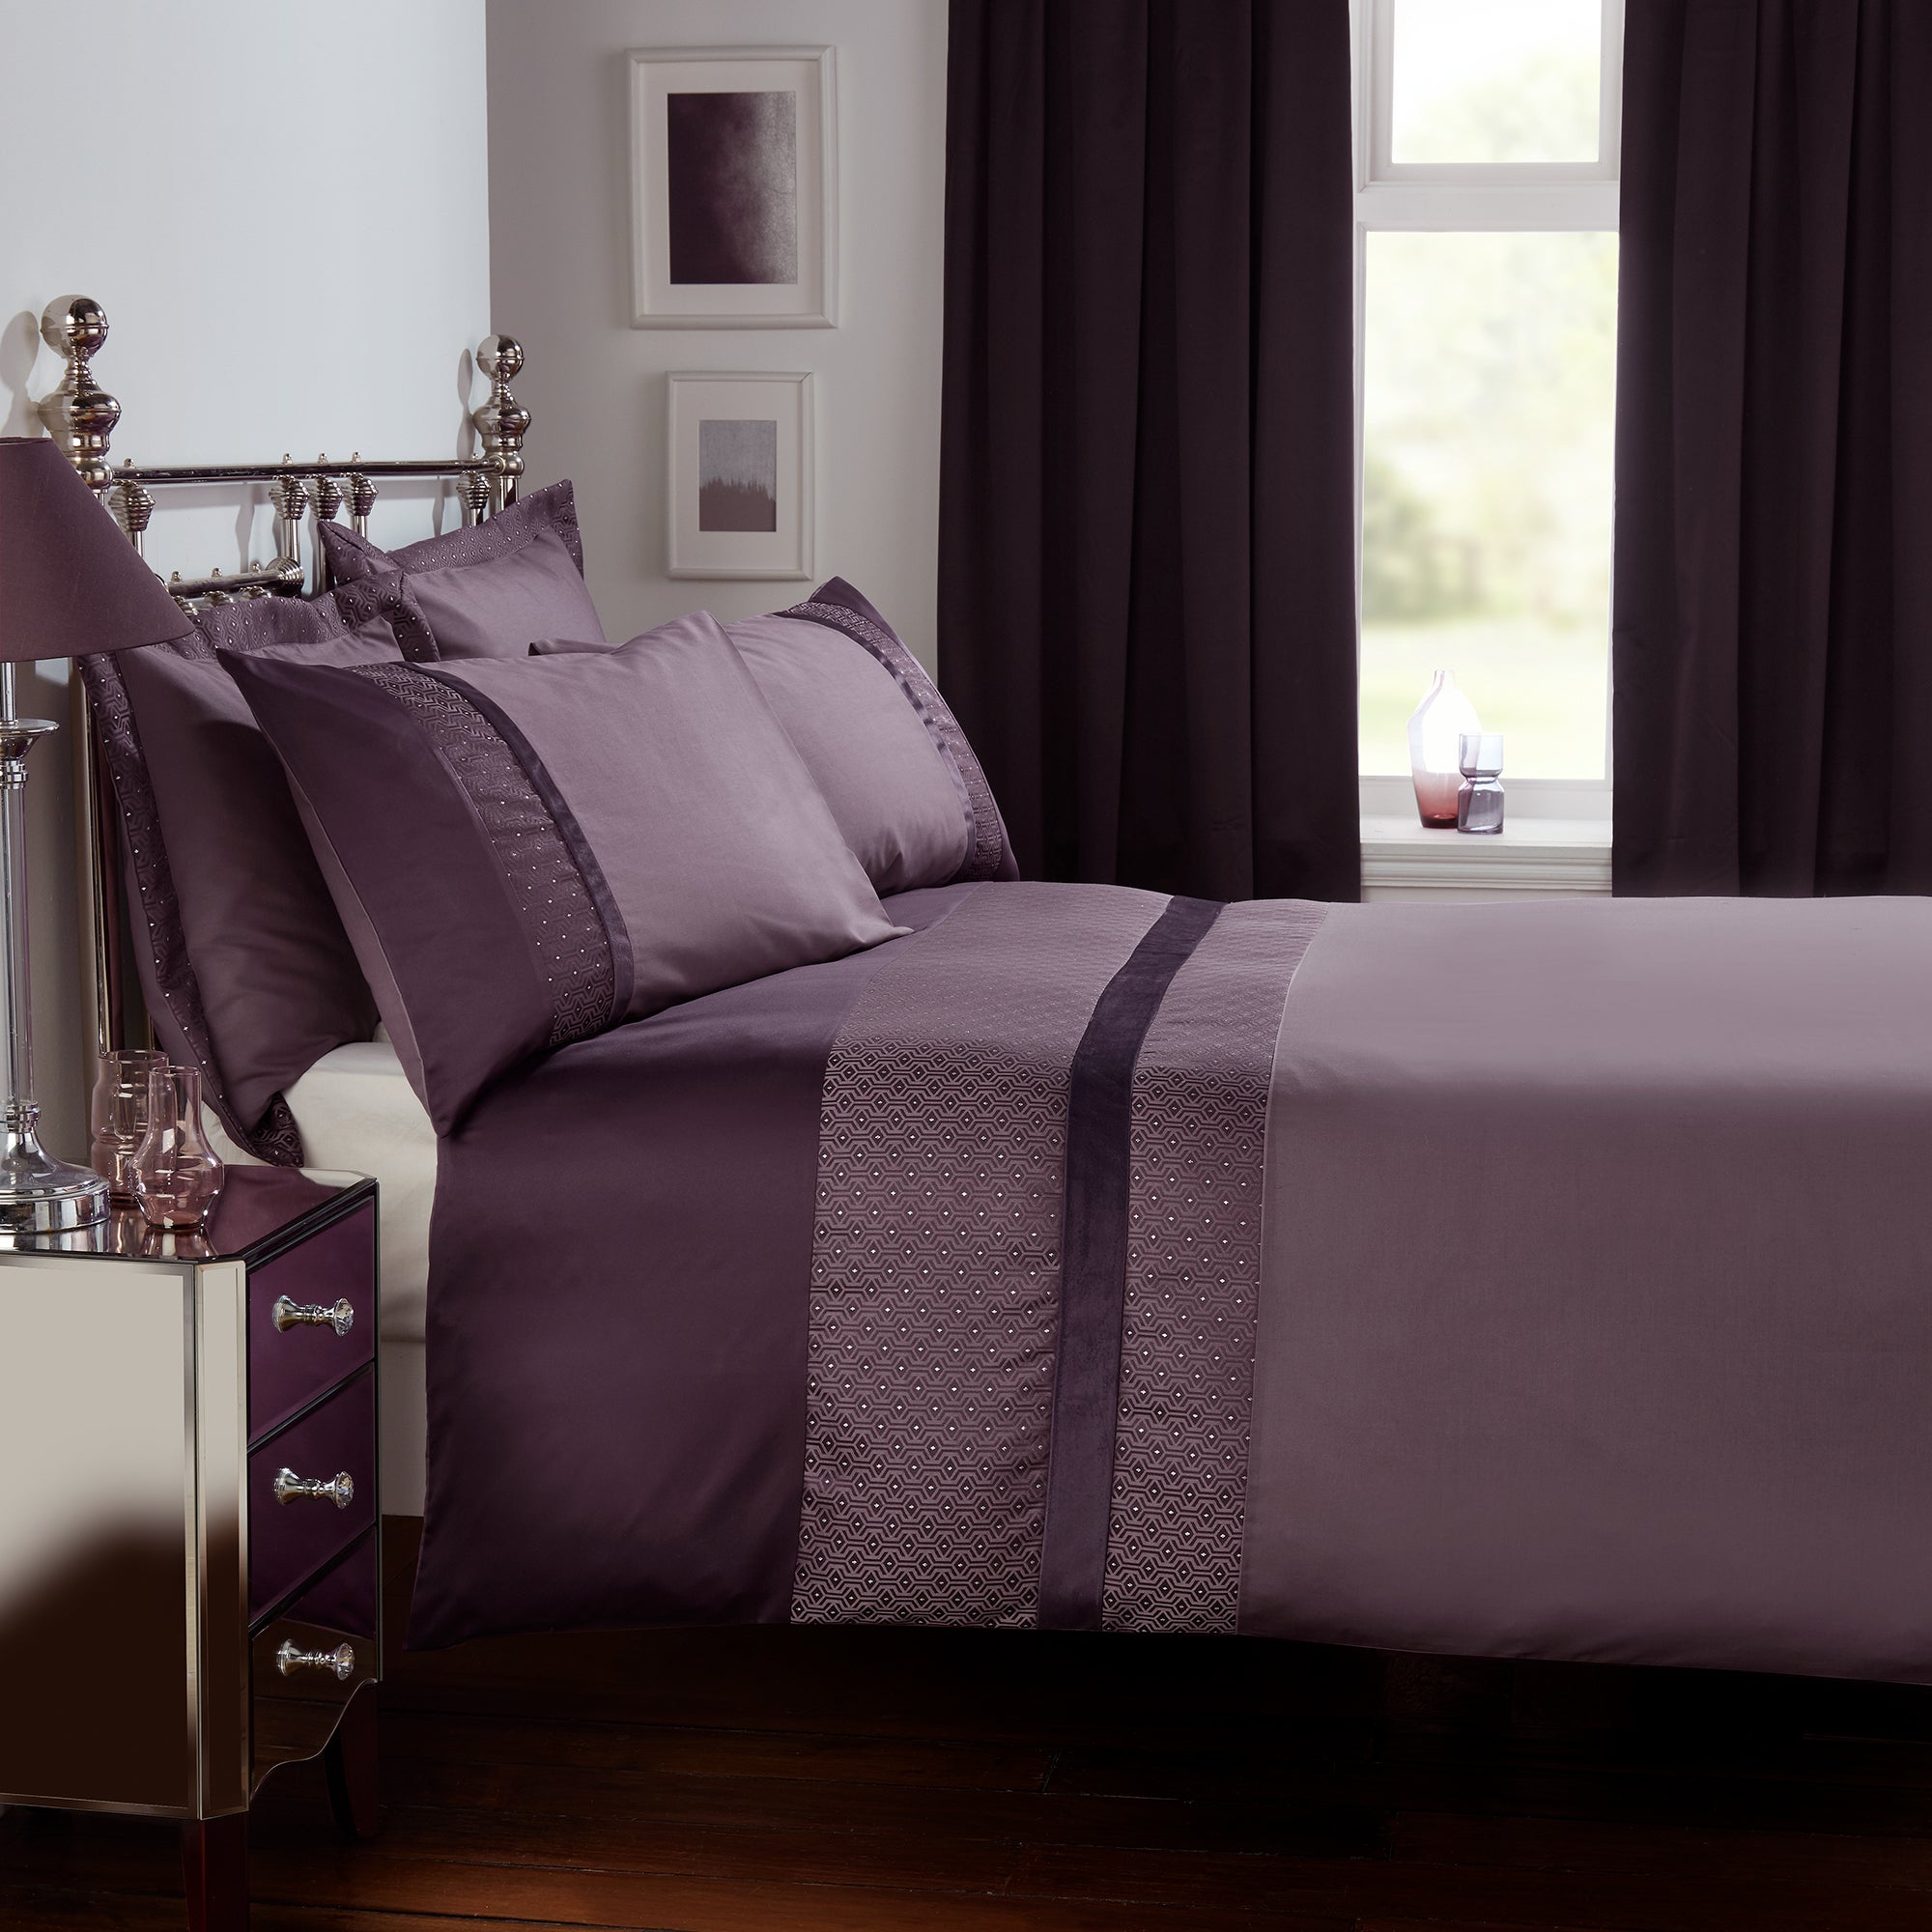 Julianna Purple Duvet Cover And Pillowcase Set Dunelm